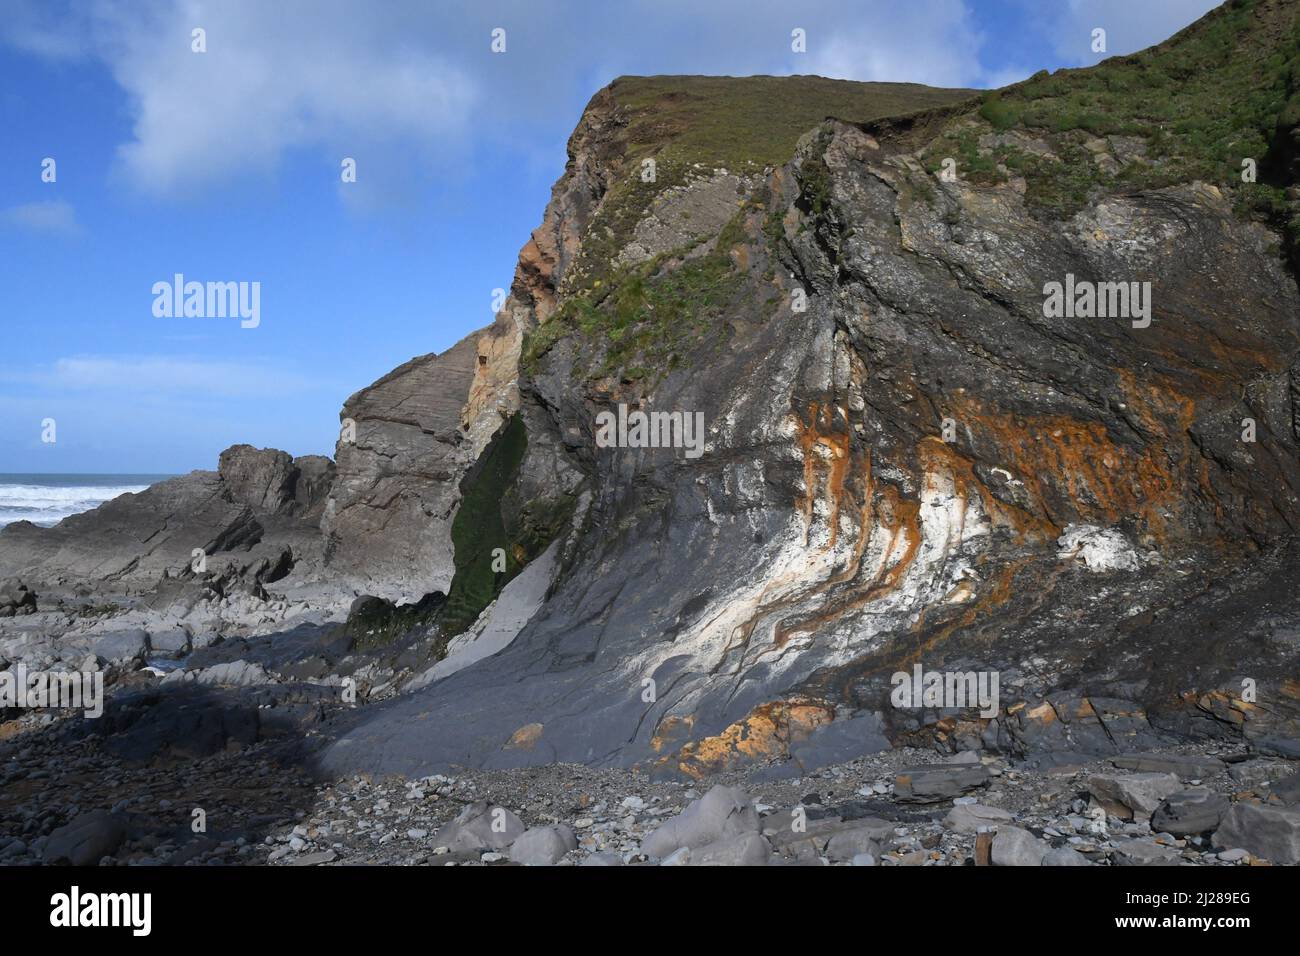 Bahía de Sandymouth con escarpados acantilados distorsionados que se elevan sobre la playa rocosa, en la costa atlántica del norte de Cornwall.UK Foto de stock